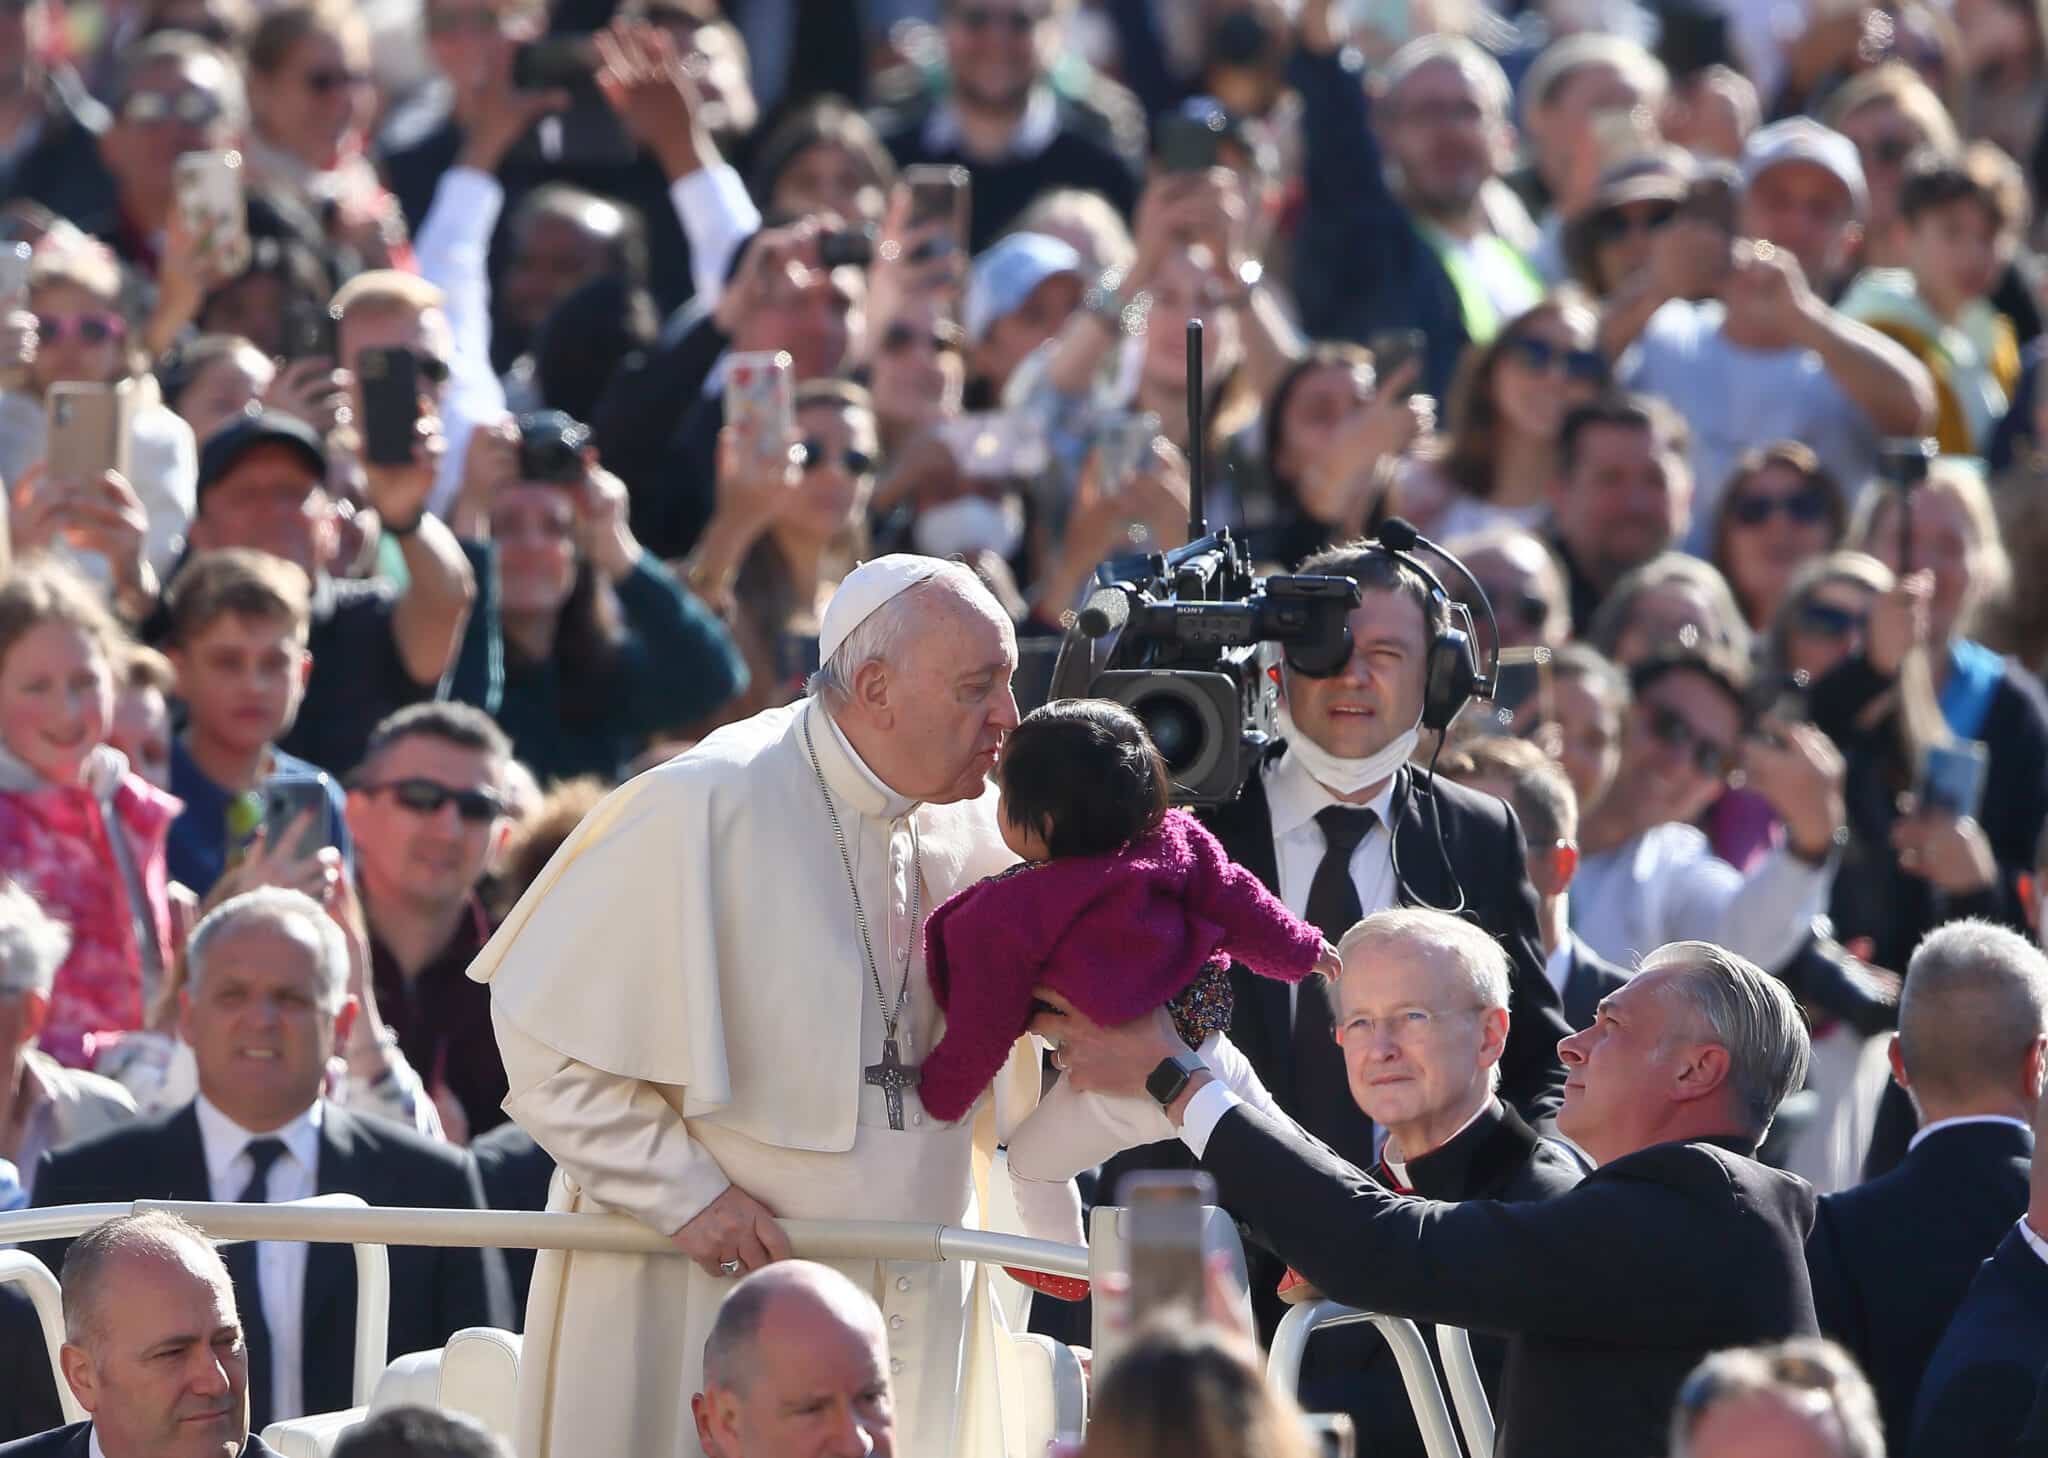 El Papa Francisco bendice a un niño en el Vaticano